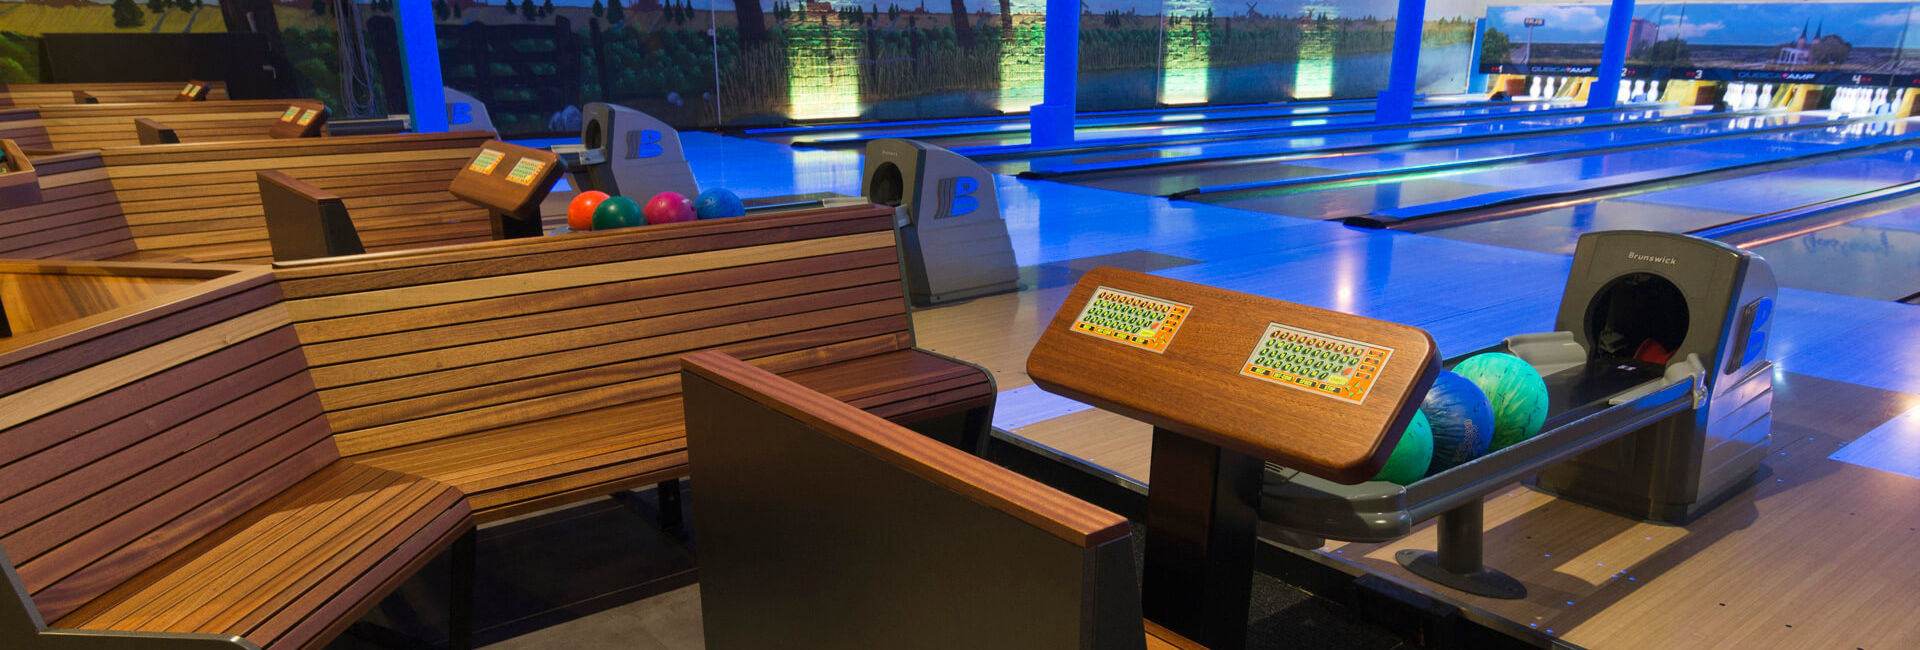 Zitjes en de bowlingbanen - Bereikbaarheid en toegankelijkheid